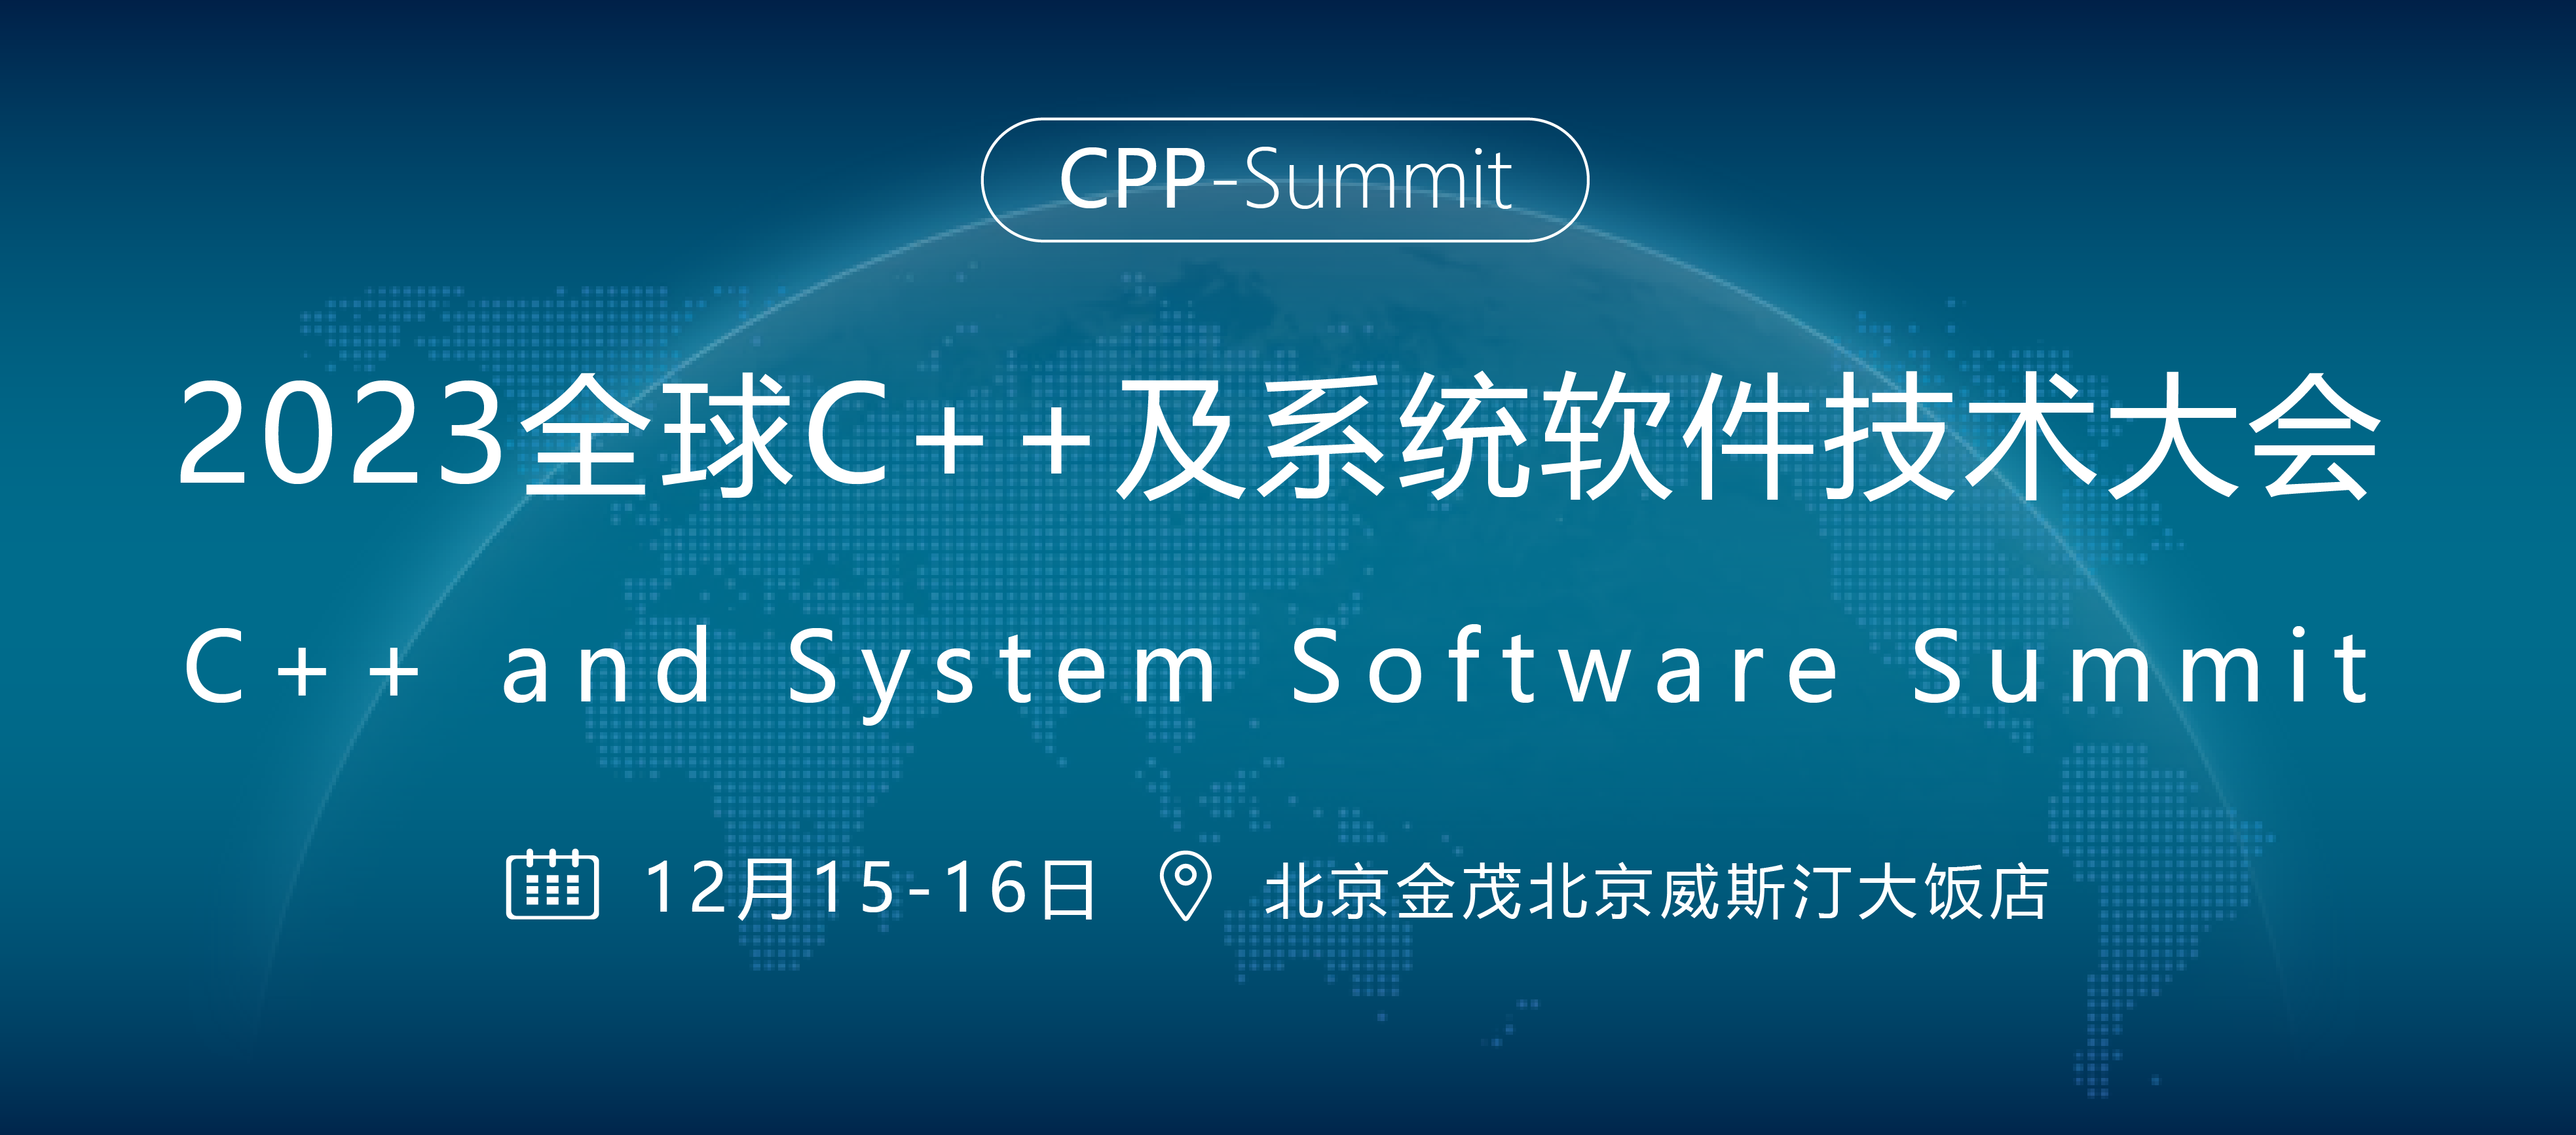 全球C++及系统软件技术大会